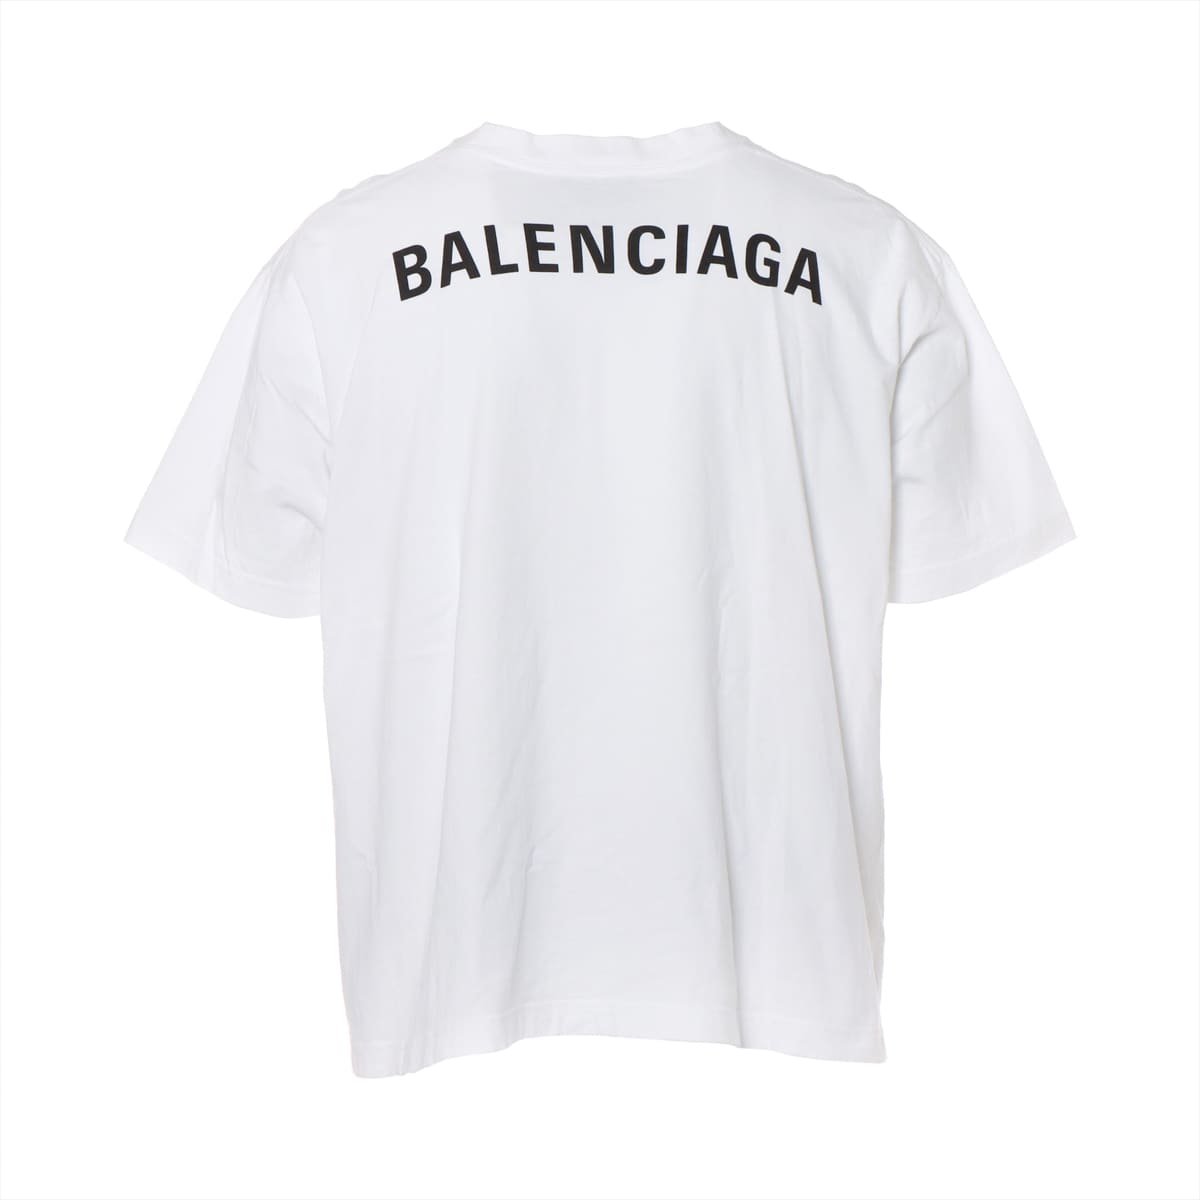 バレンシアガ 18年 コットン Tシャツ S メンズ ホワイト 578124 バック